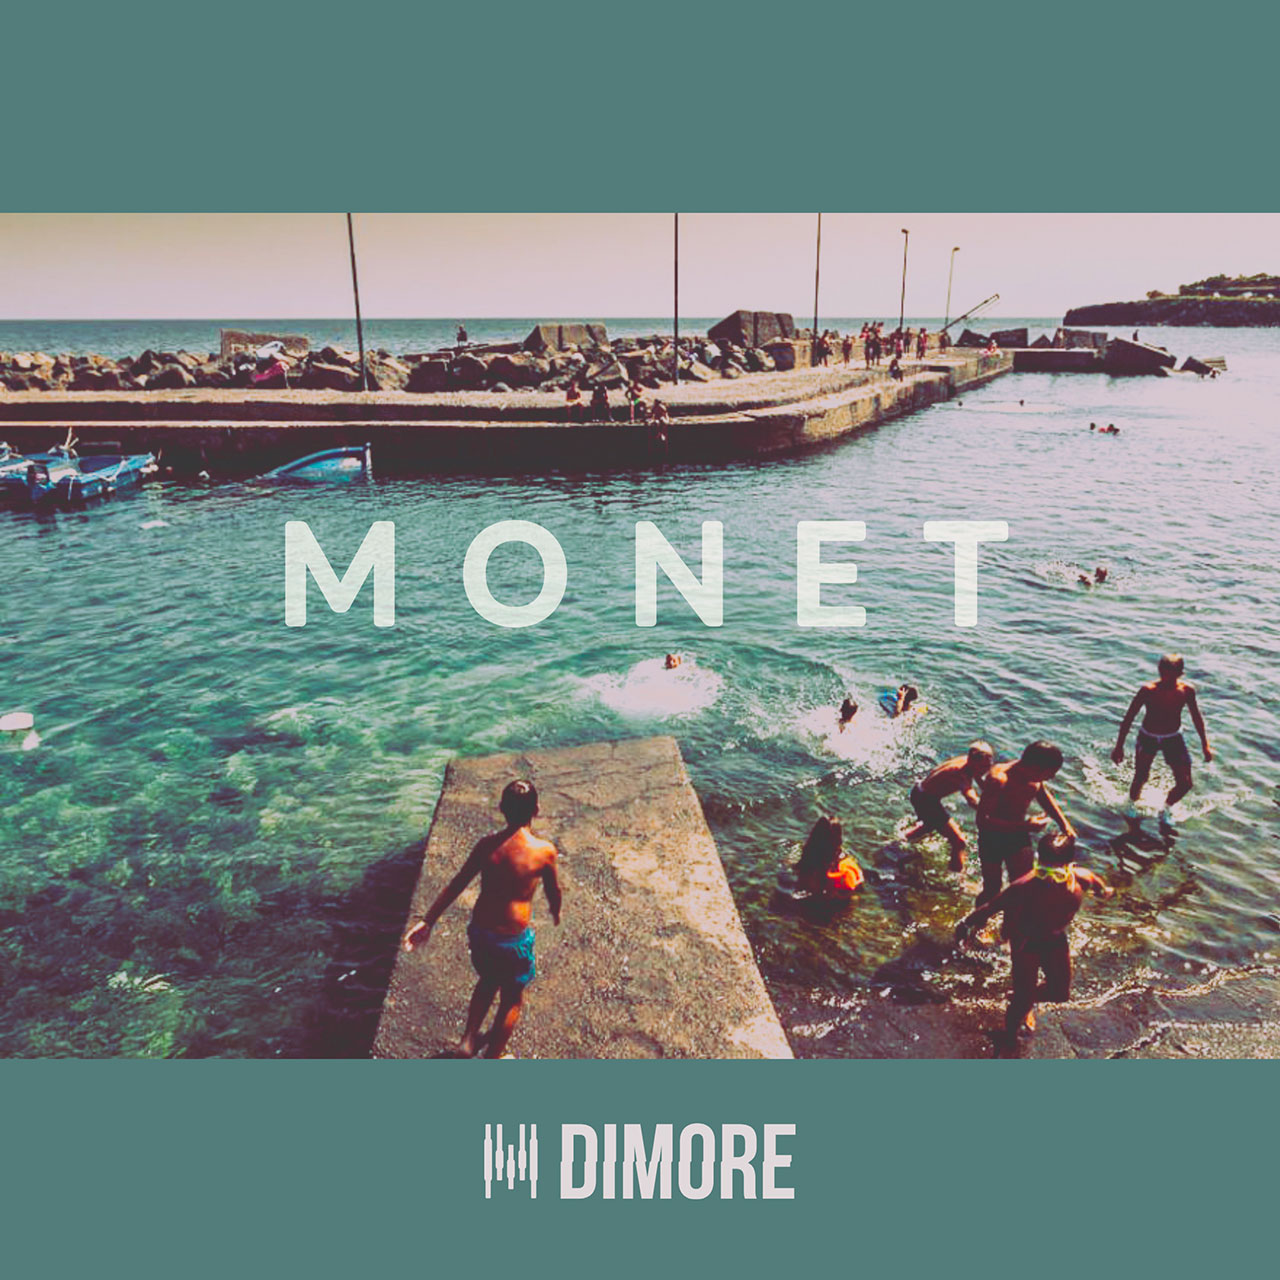 Esce “Monet”, il nuovo singolo scritto e interpretato dai Dimore